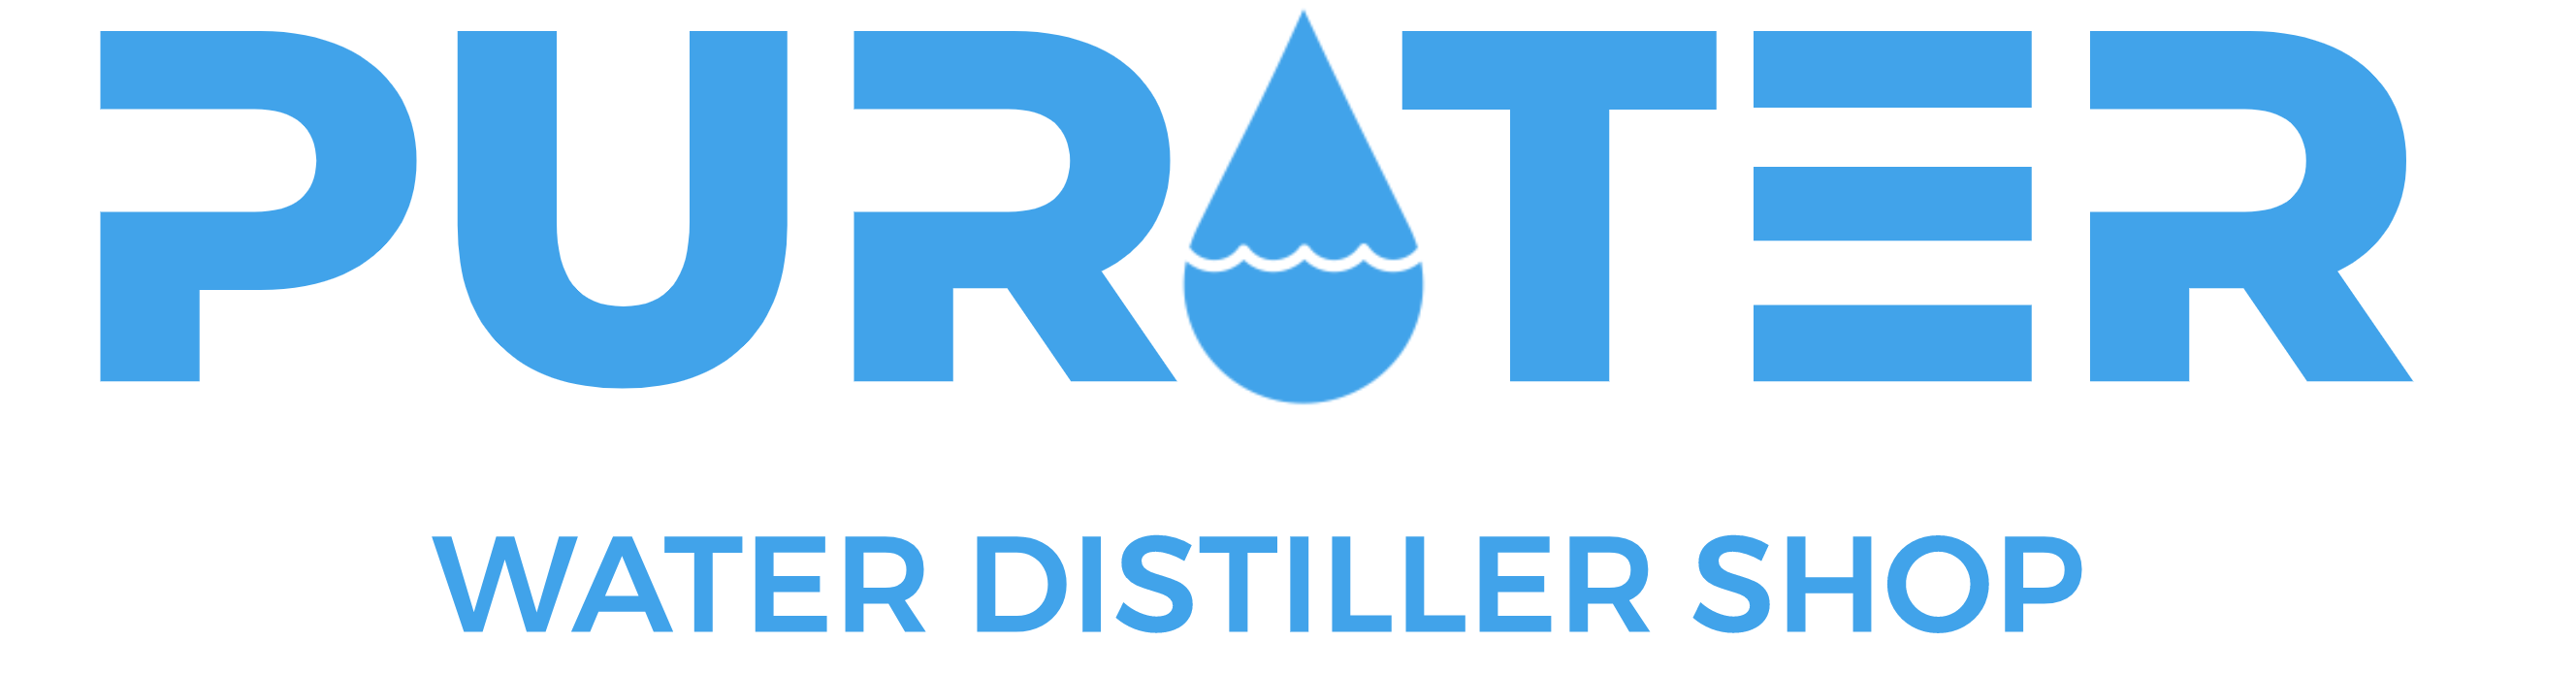 Purater Water Distiller Shop